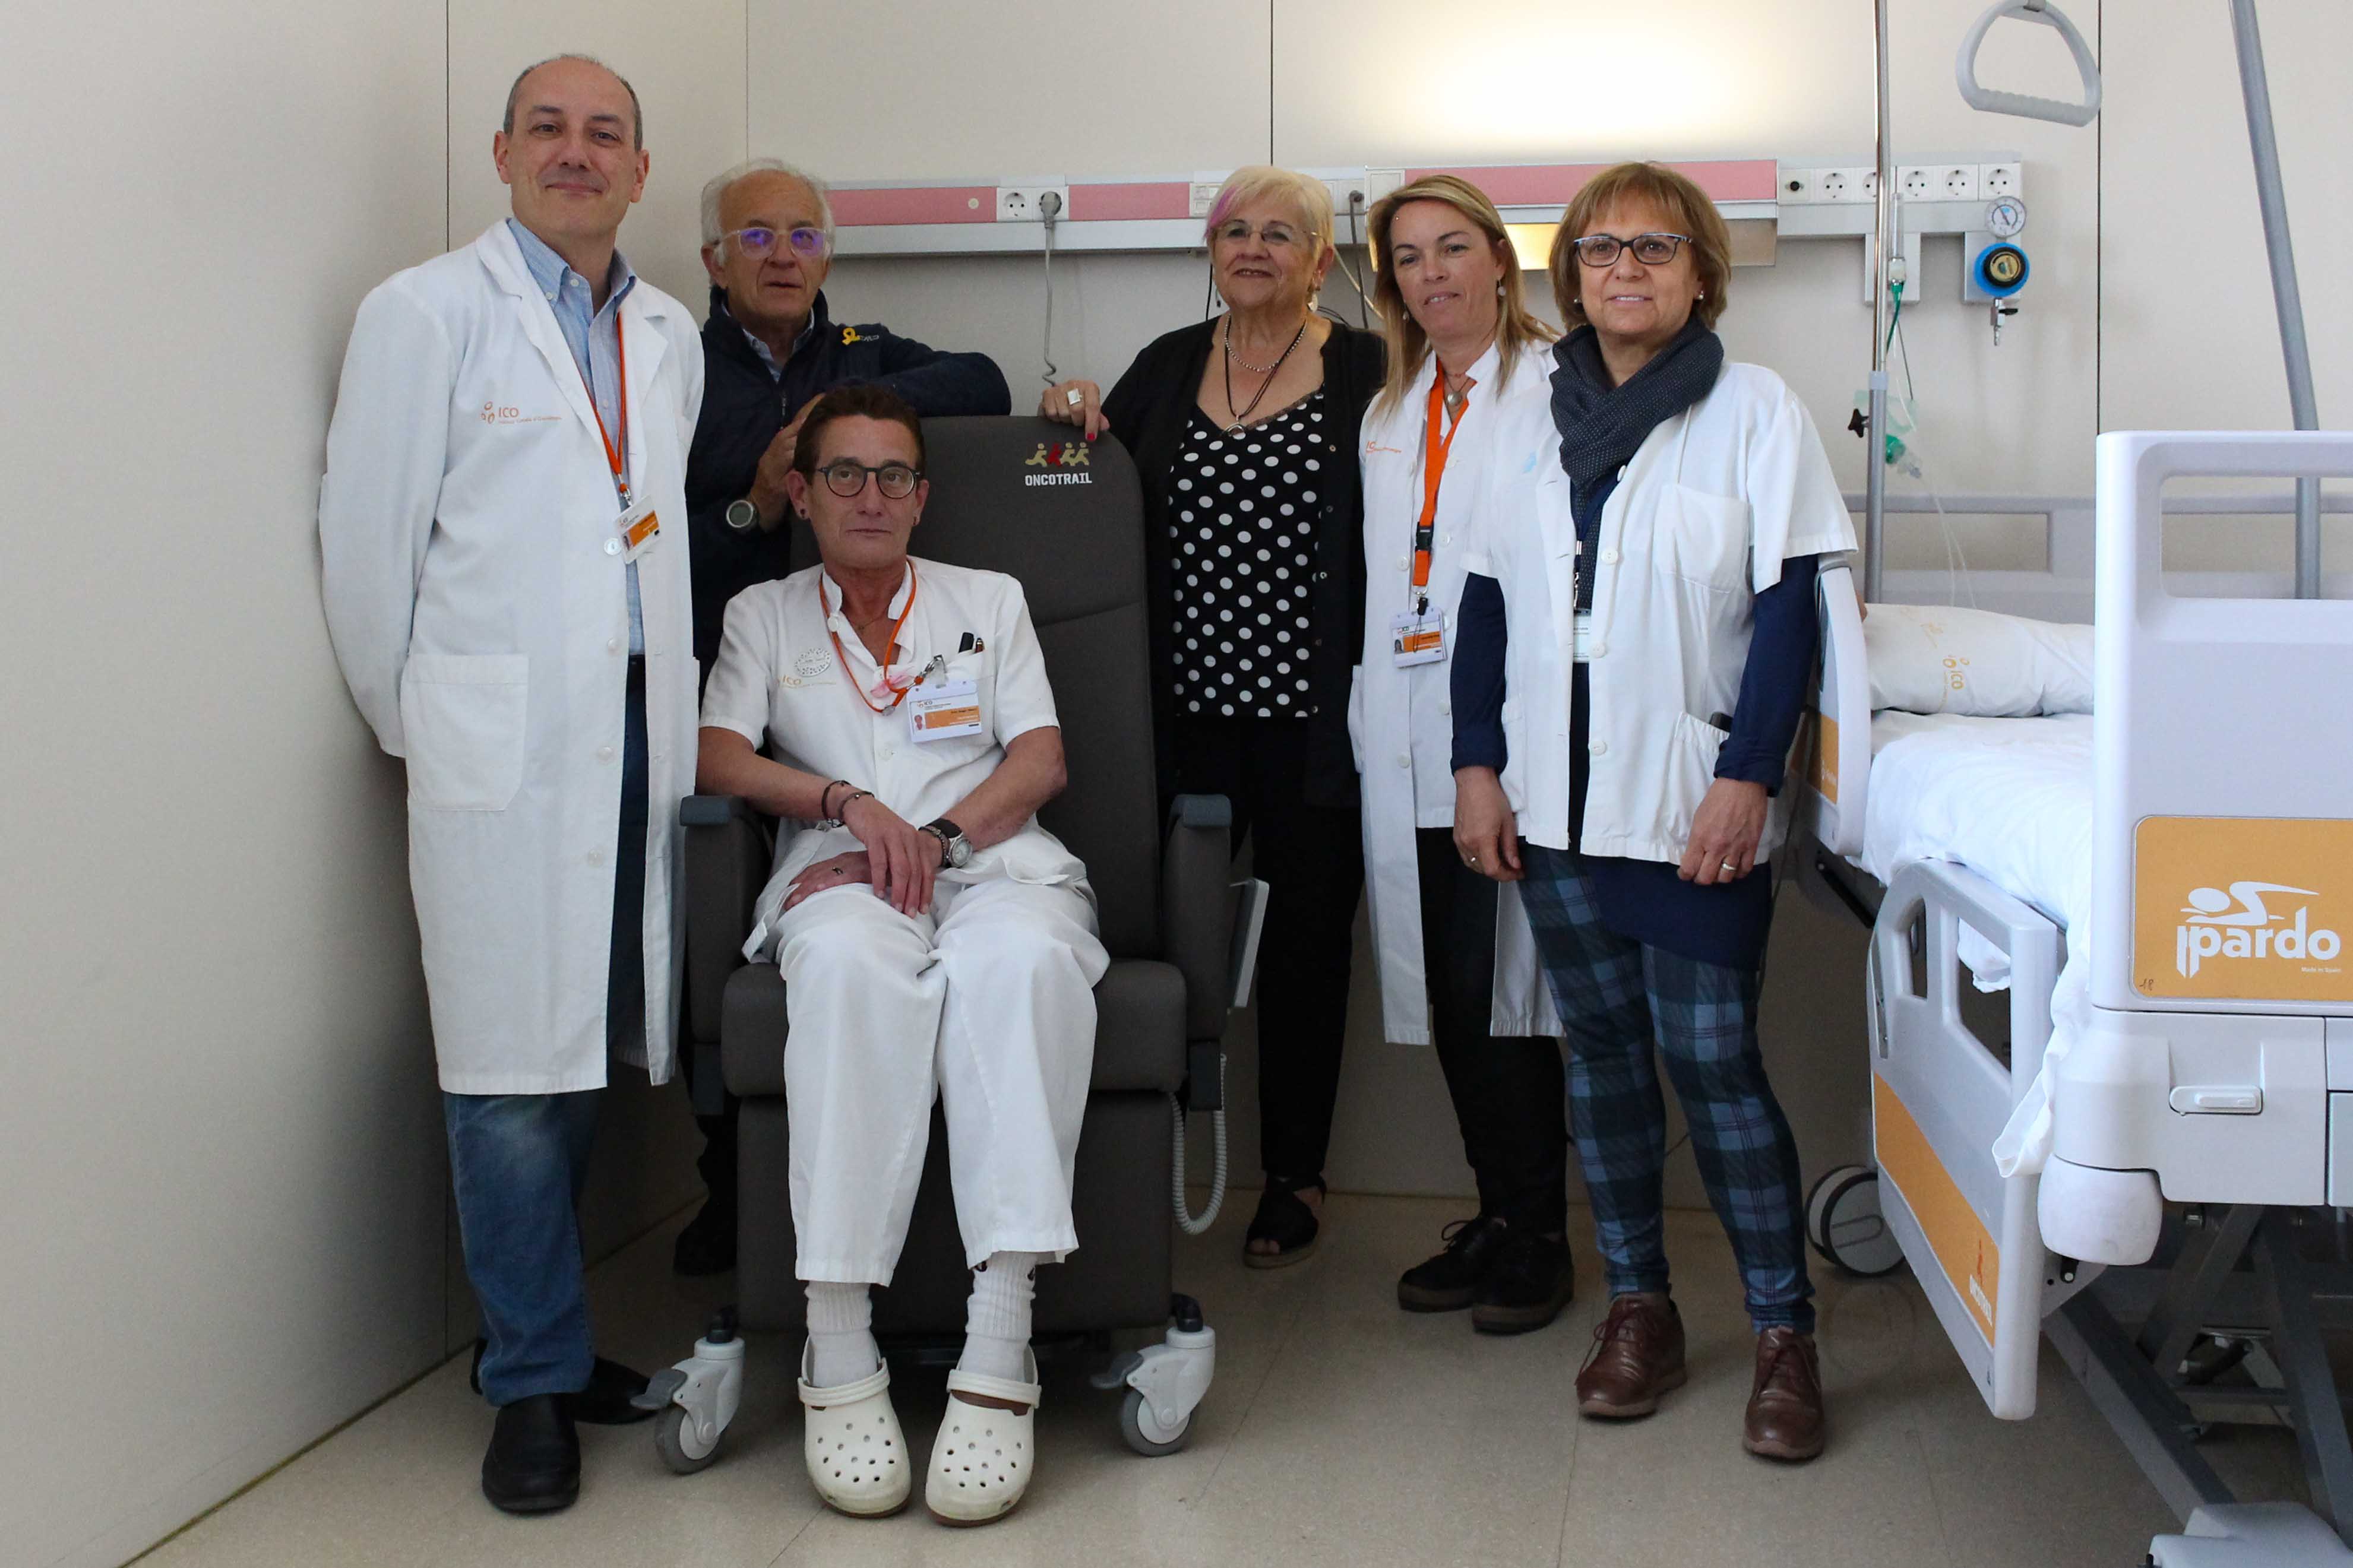 El director de l’Oncotrail, Lluís Comet, i la presidenta de la Fundació Oncolliga Girona, Lluïsa Ferrer, han visitat les dues plantes on s’han instal·lat les butaques, acompanyats per Glòria Padura, directora de l’Hospital Universitari de Girona Dr. Josep Trueta, i David Gallardo, director assistencial de l’ICO Girona. També els han acompanyat la directora d’Infermeria de l’Hospital Trueta, Pilar Solé, i l’adjunta a Direcció de Cures de l’ICO Girona, Imma Brao  